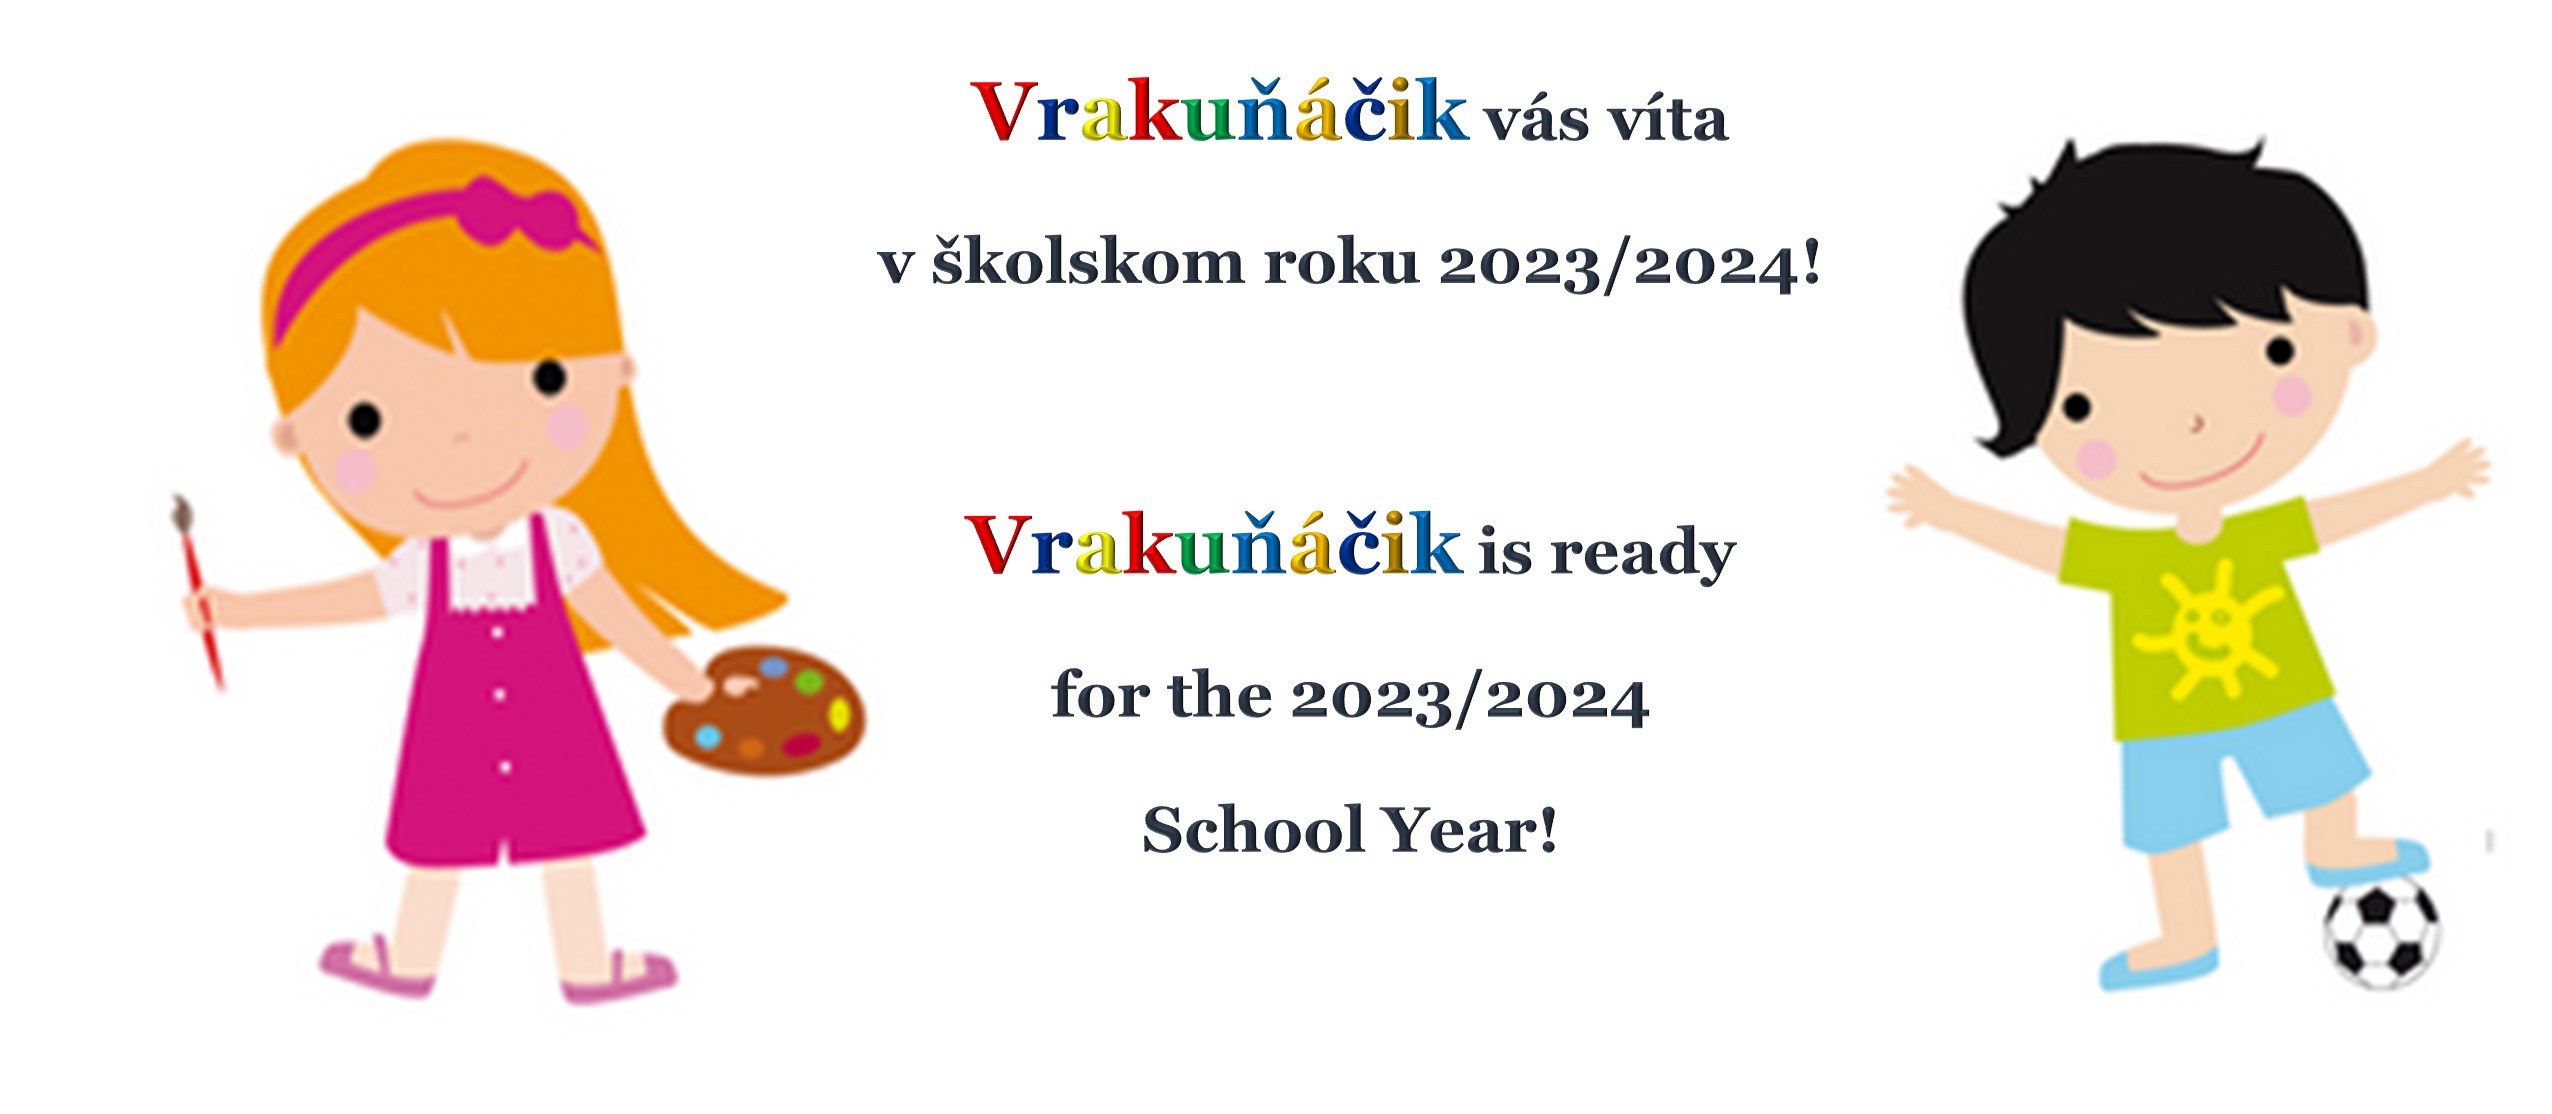 School year 2023 - 2024